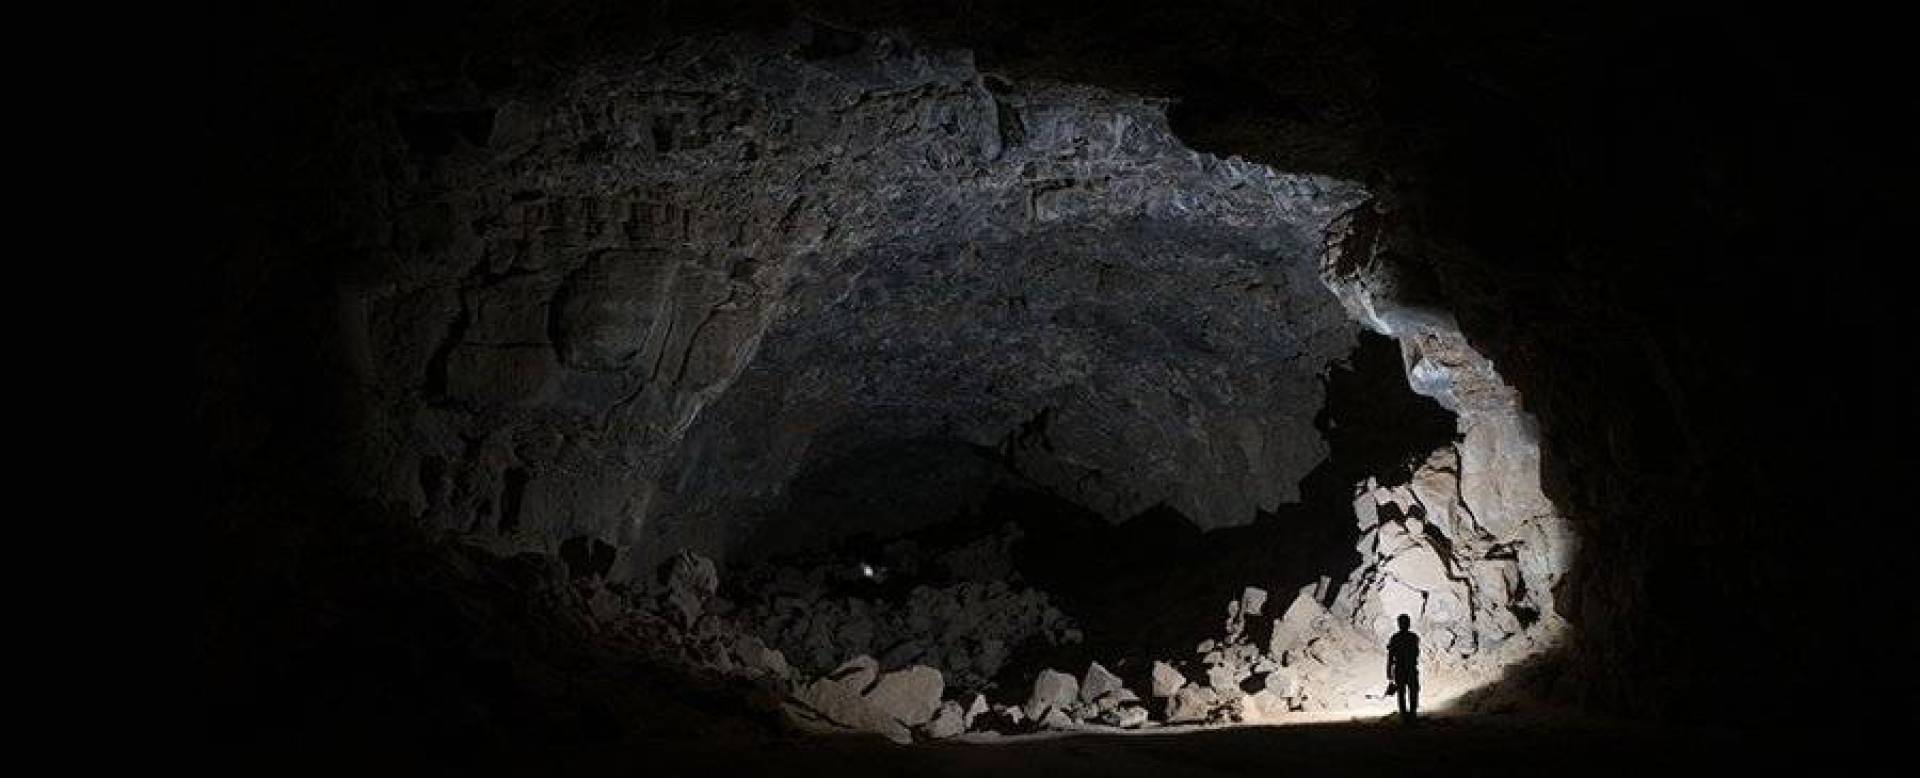 أول دليل على الحياة البشرية القديمة في كهف بركاني بالسعودية